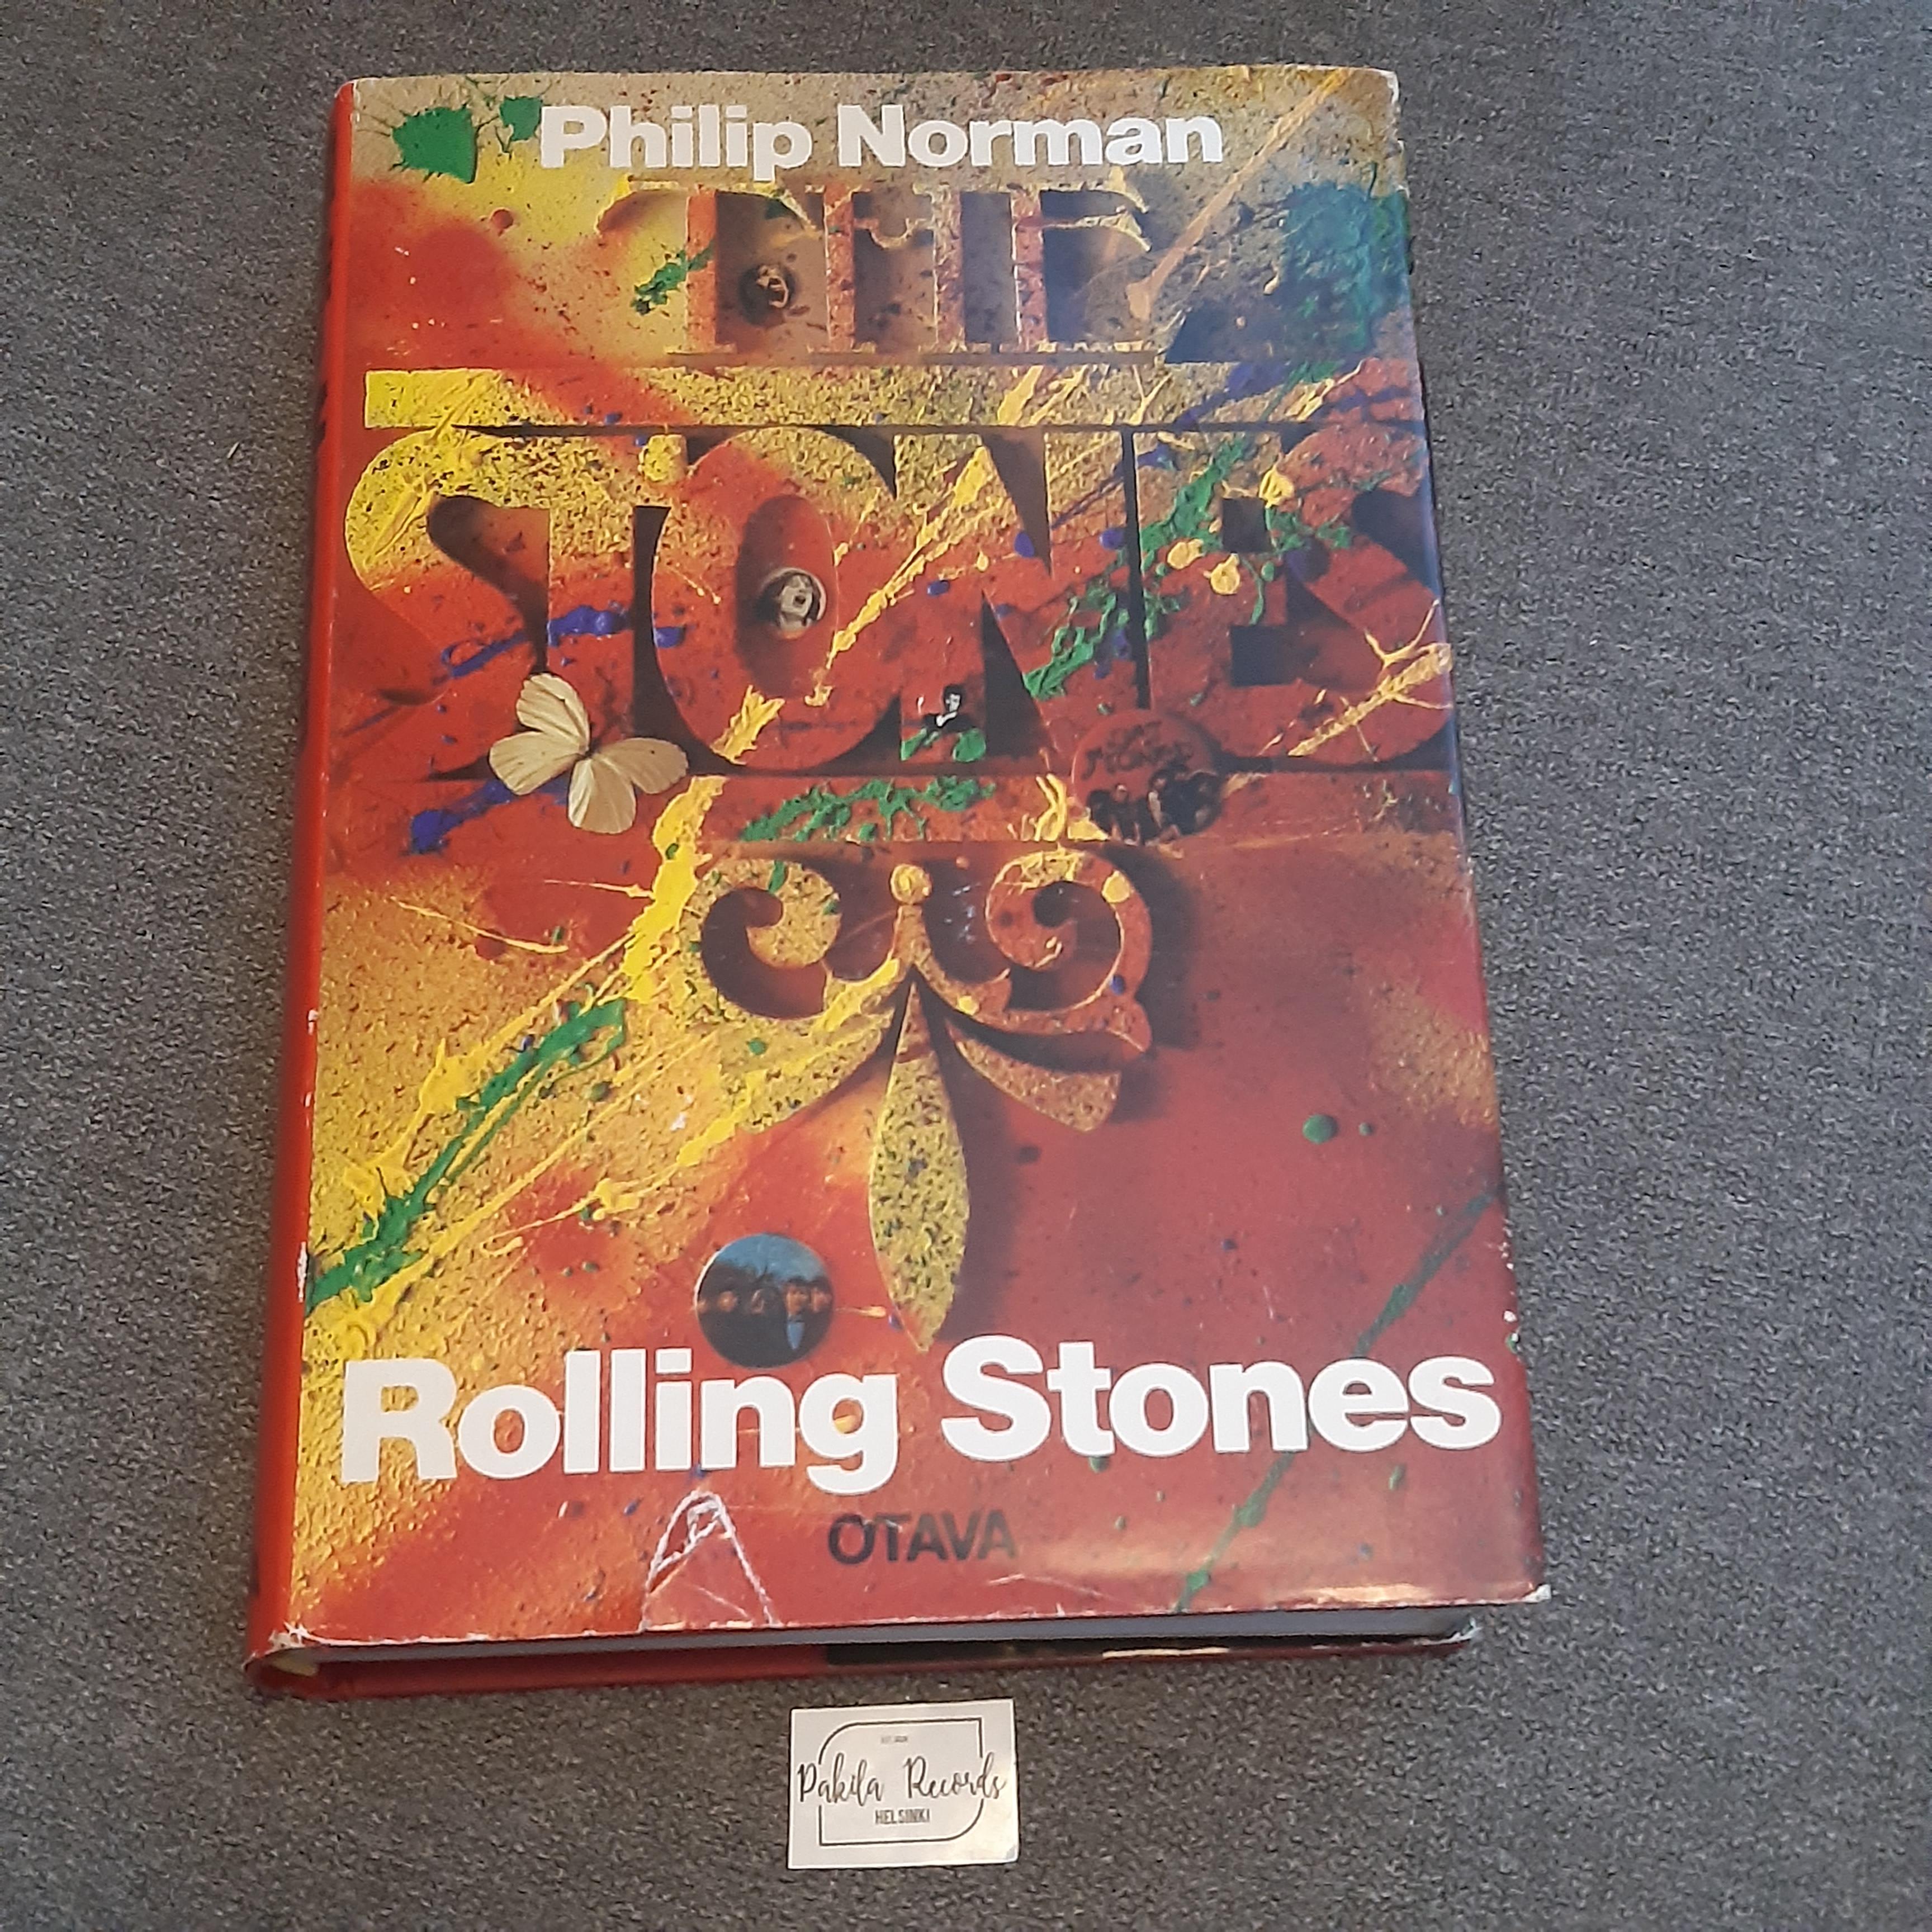 Rolling Stones - Philip Norman - Kirja (käytetty)